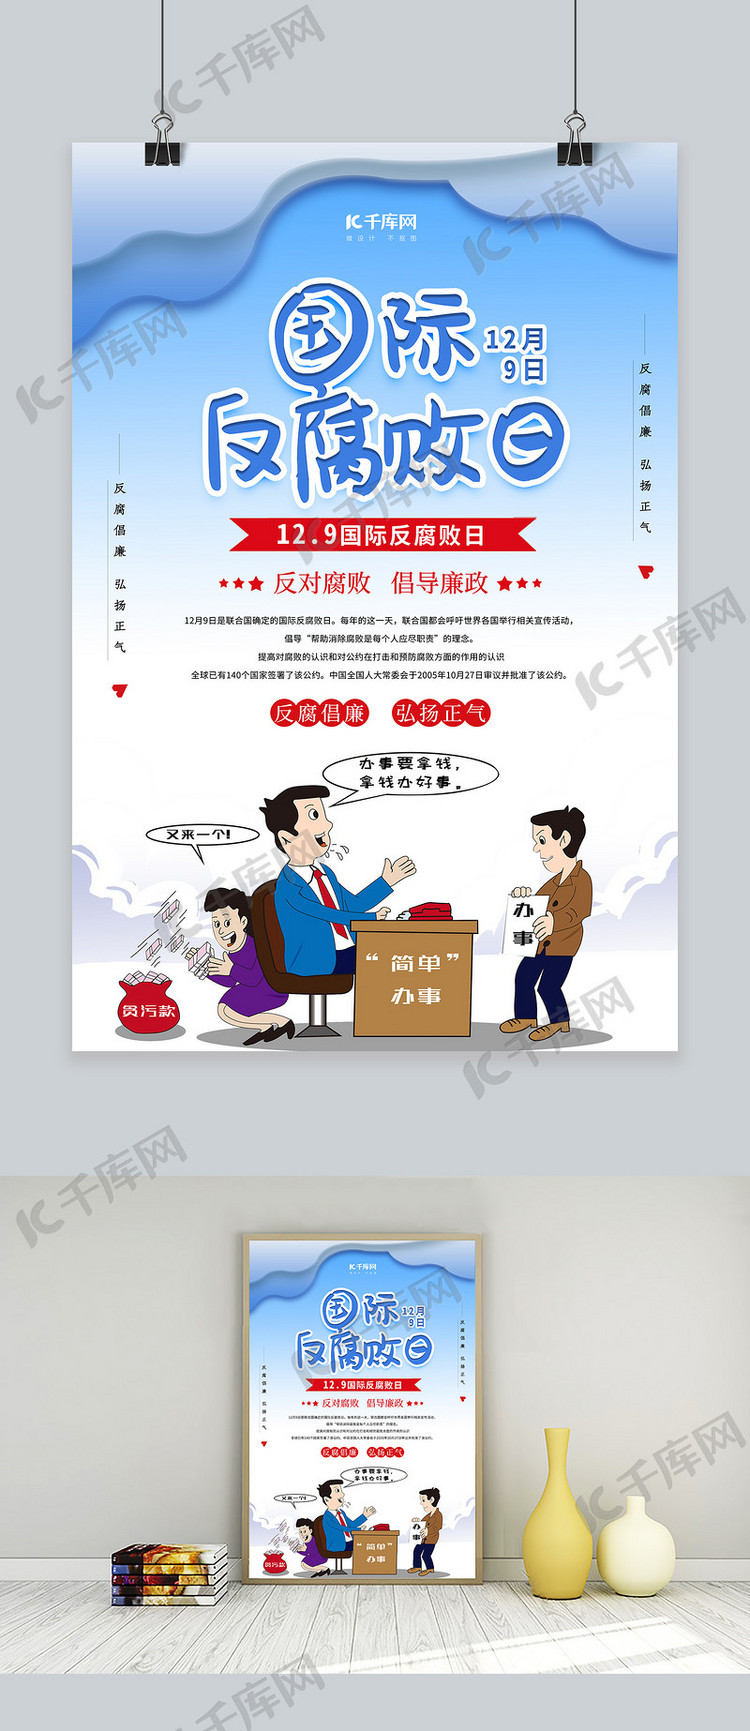 清新国际反腐败日宣传海报